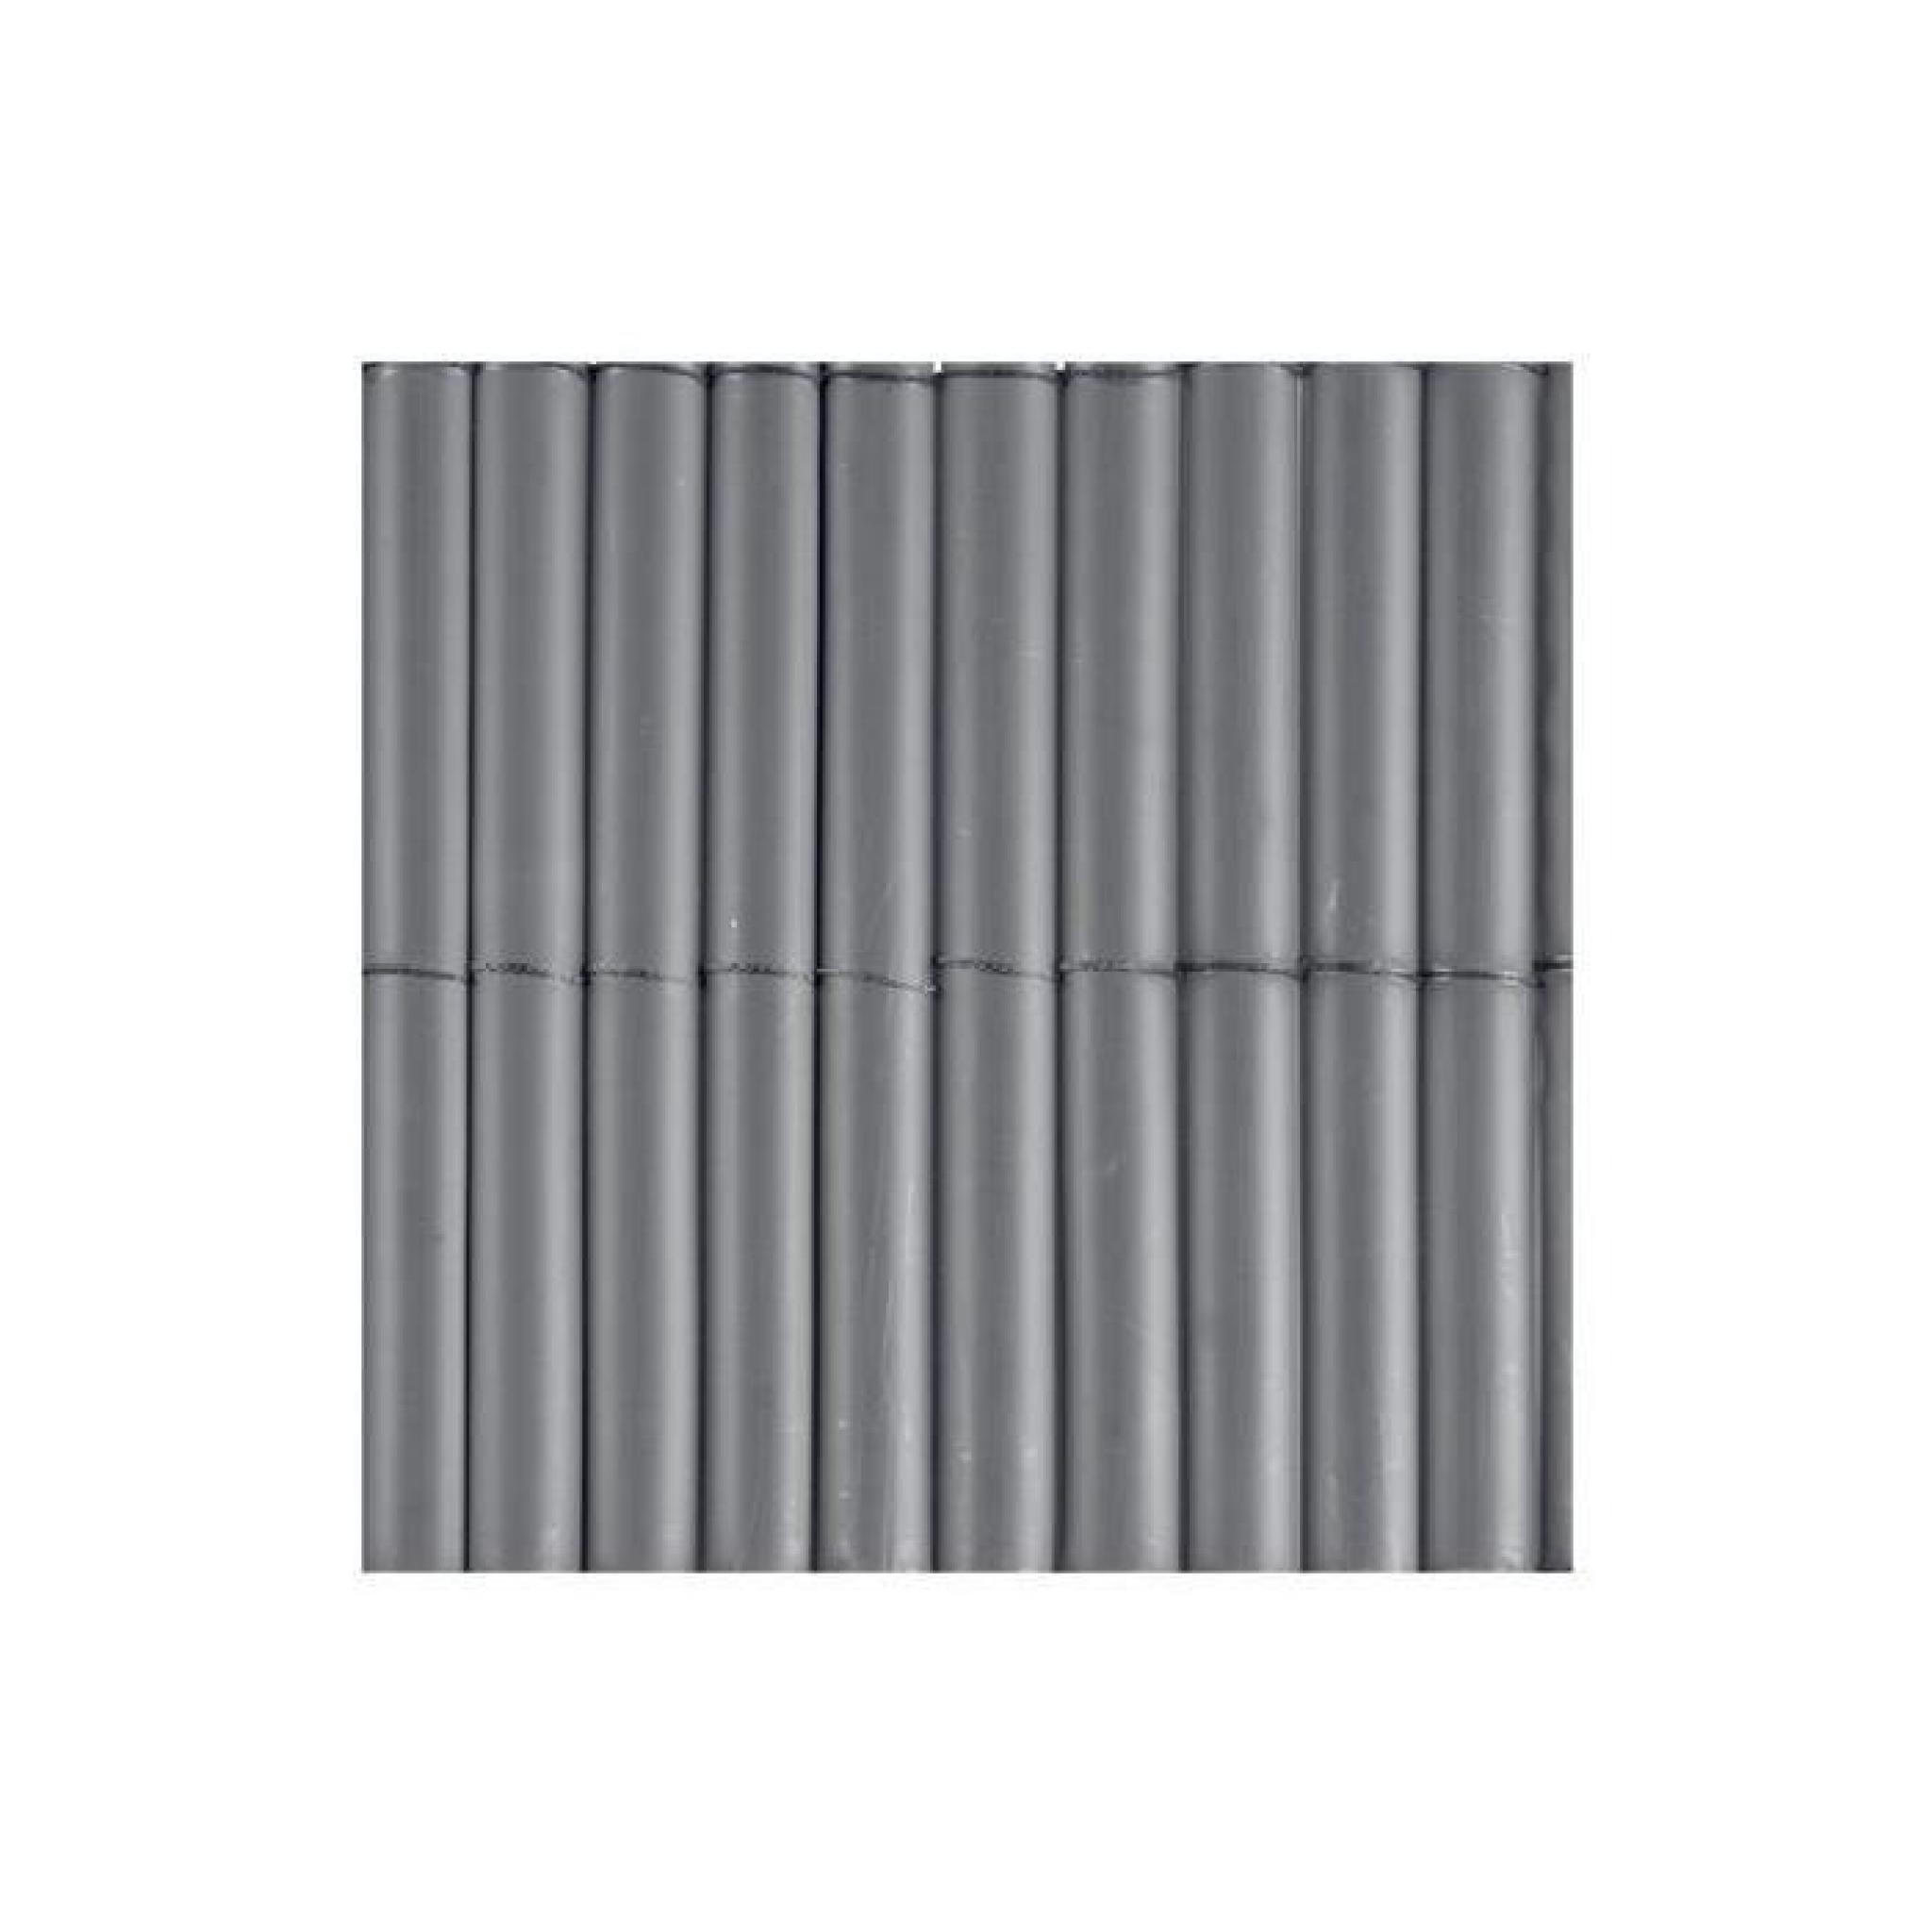 Canisse PVC gris 900 g/m² Gris 1 x 3 mètres pas cher